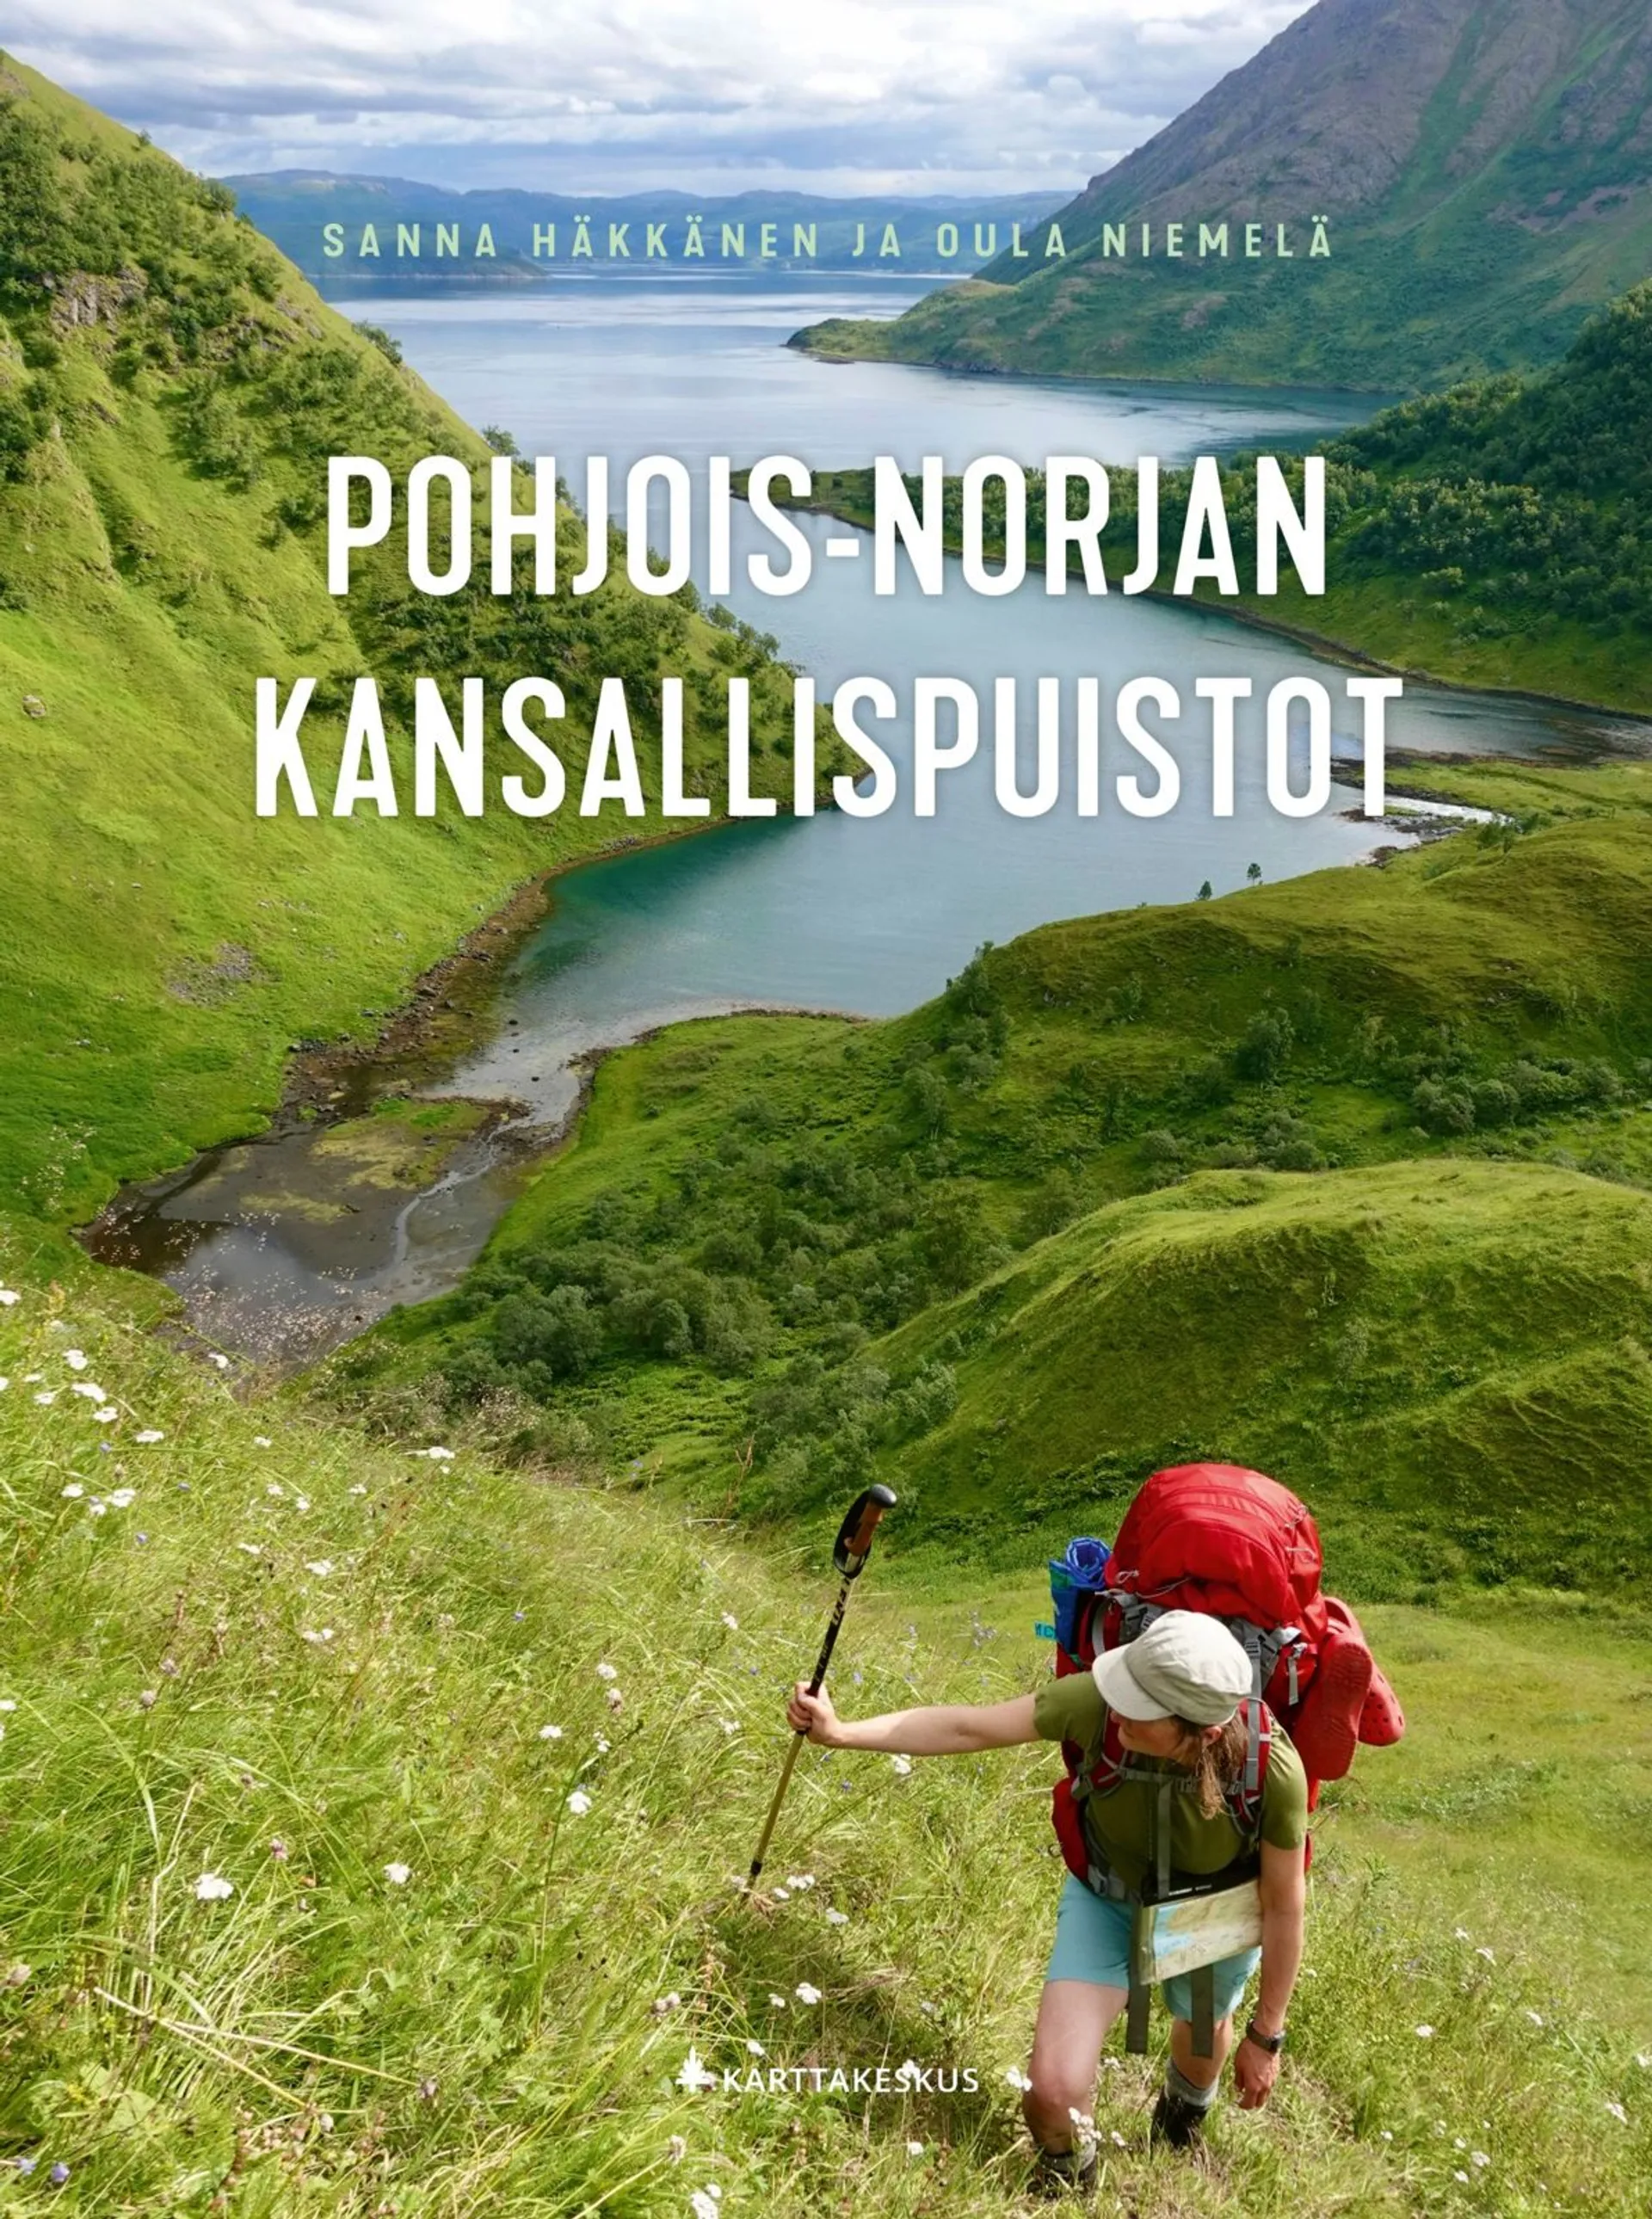 Häkkänen, Pohjois-Norjan kansallispuistot